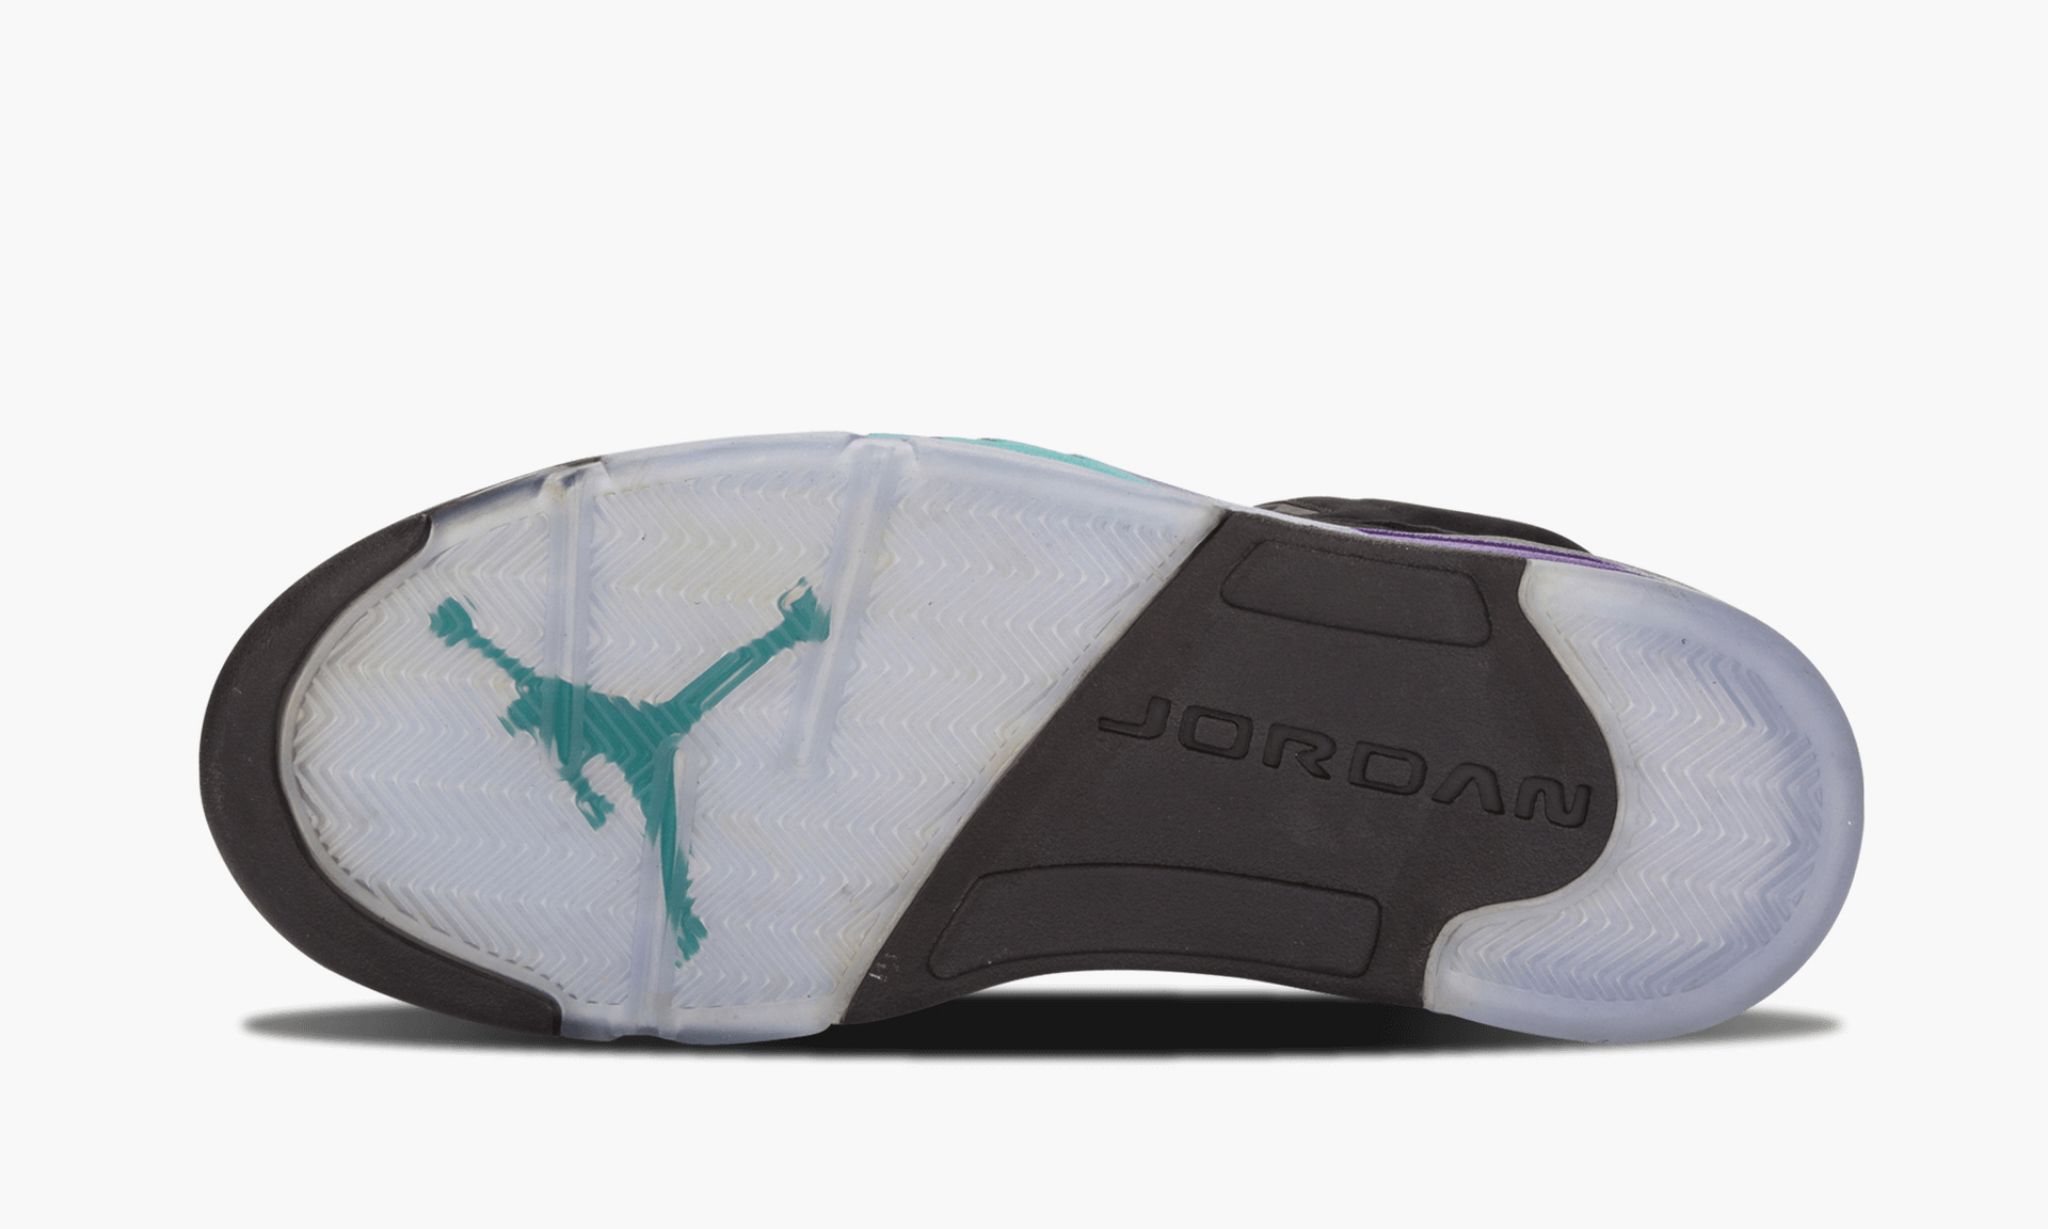 Jumpman, Jordan Brand, Jordan 5, Community Poll, Air Jordan 5 Grape, Air Jordan 5 Black Grape, Air Jordan 5, Air Jordan